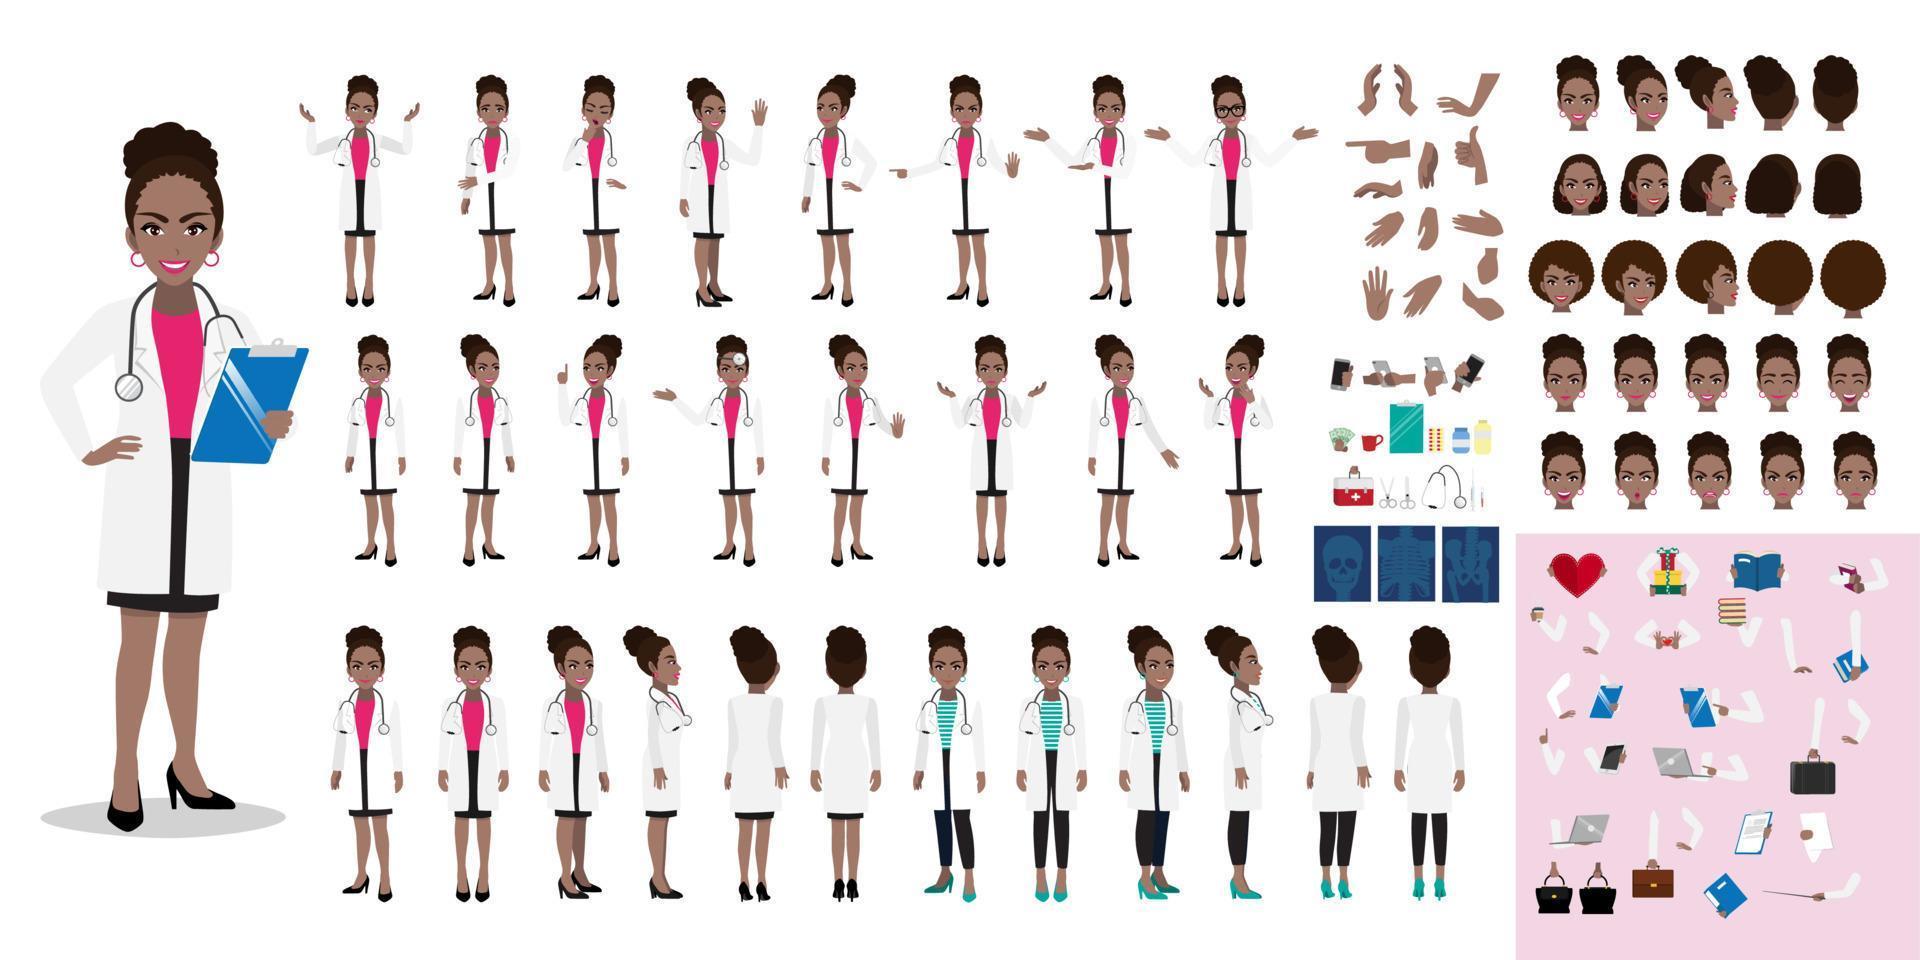 Cartoon-Zeichensatz für Ärztin, amerikanische afrikanische Ärztin in verschiedenen Uniformen und Posen, medizinisches Personal oder Krankenhauspersonal. doktor cartoon diy kit auf einem weißen hintergrund vektor